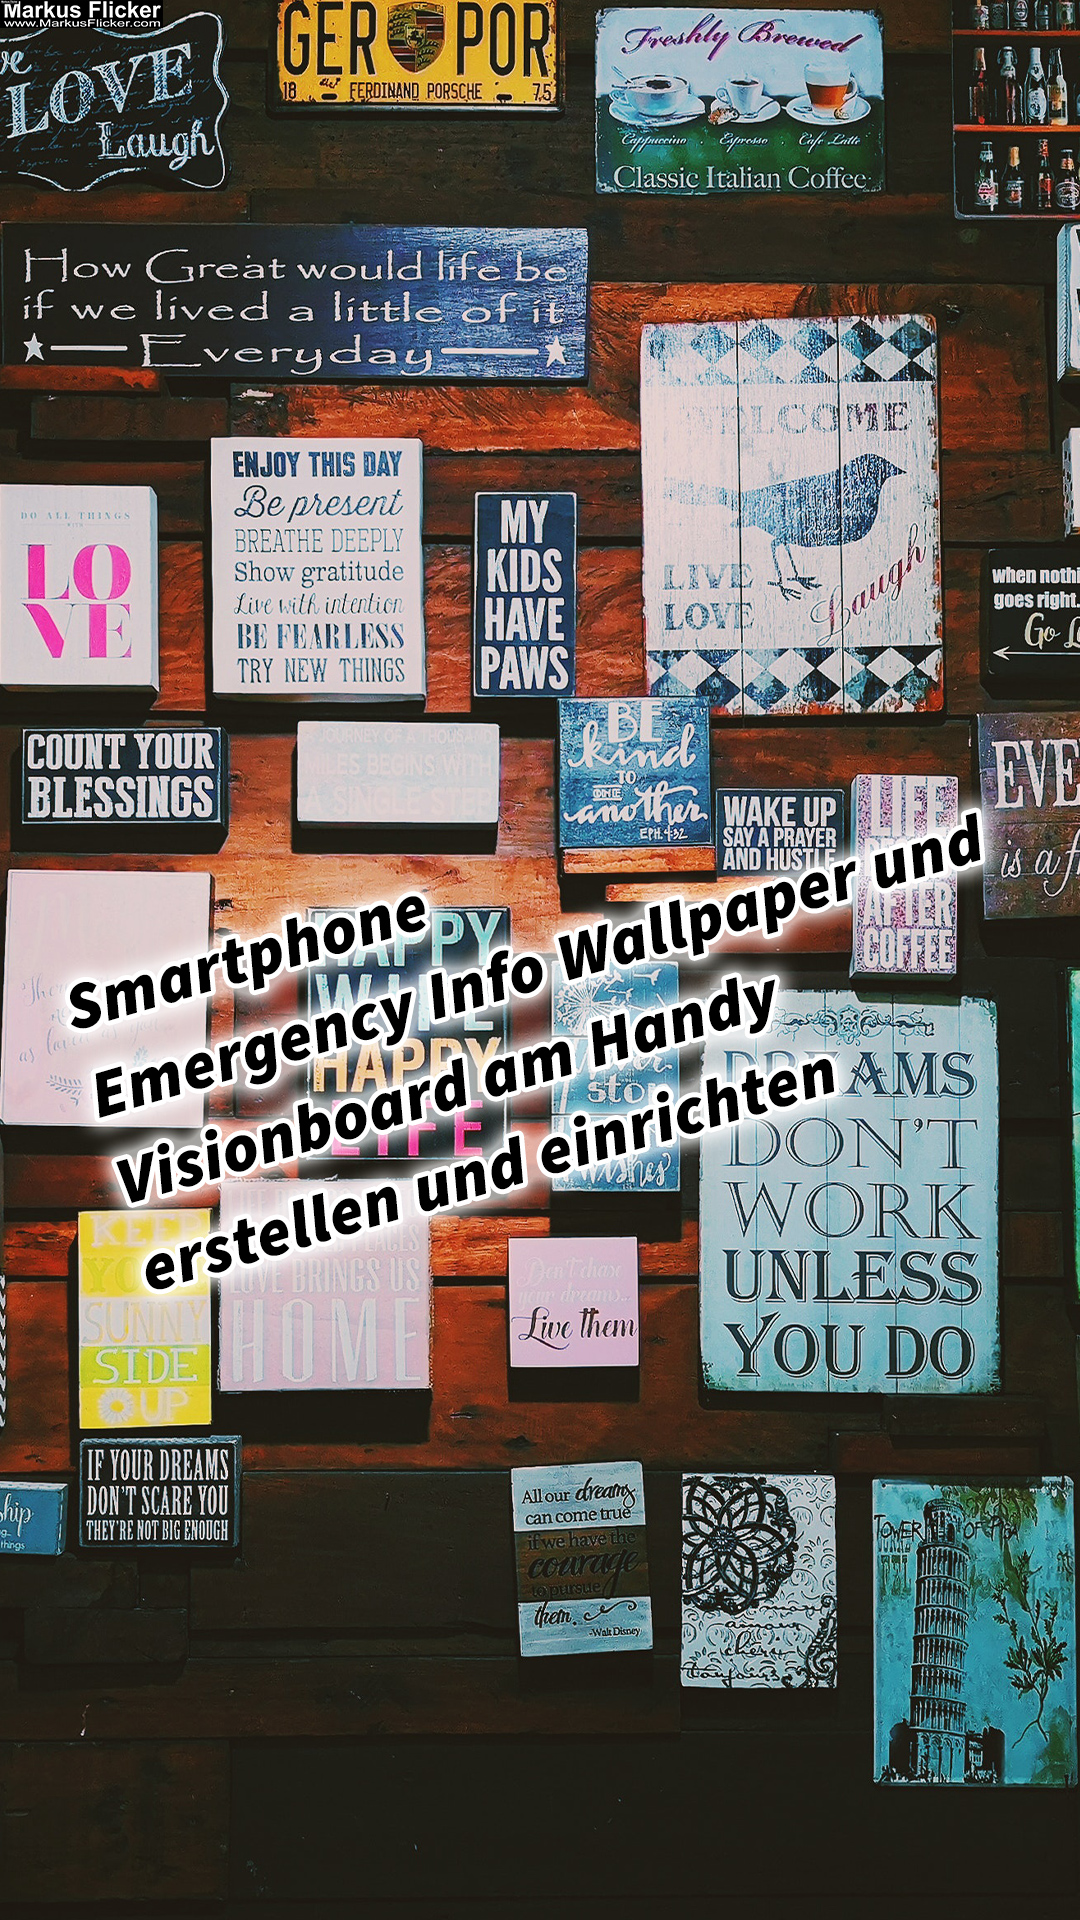 Smartphone Emergency Info Wallpaper und Visionboard am Handy erstellen und einrichten